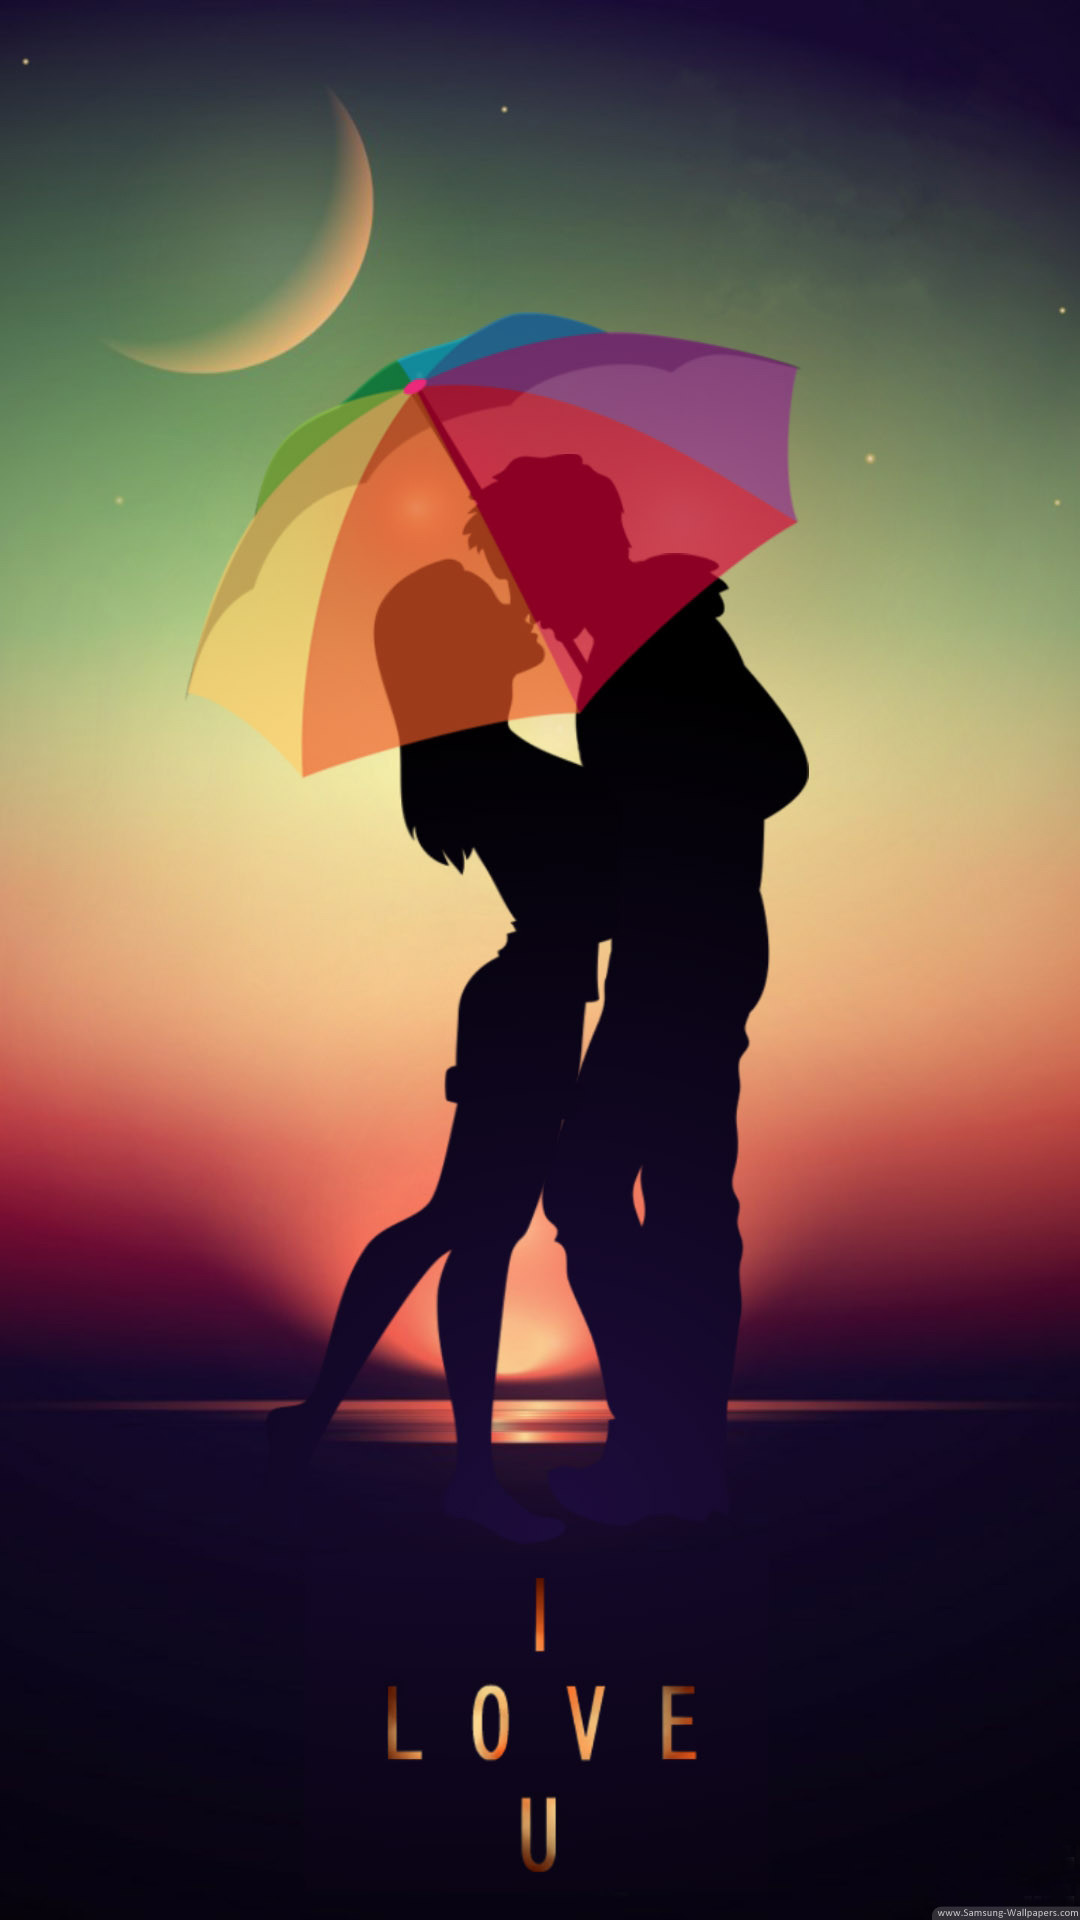 sperrbildschirm hintergrund hd,regenschirm,romantik,poster,himmel,liebe